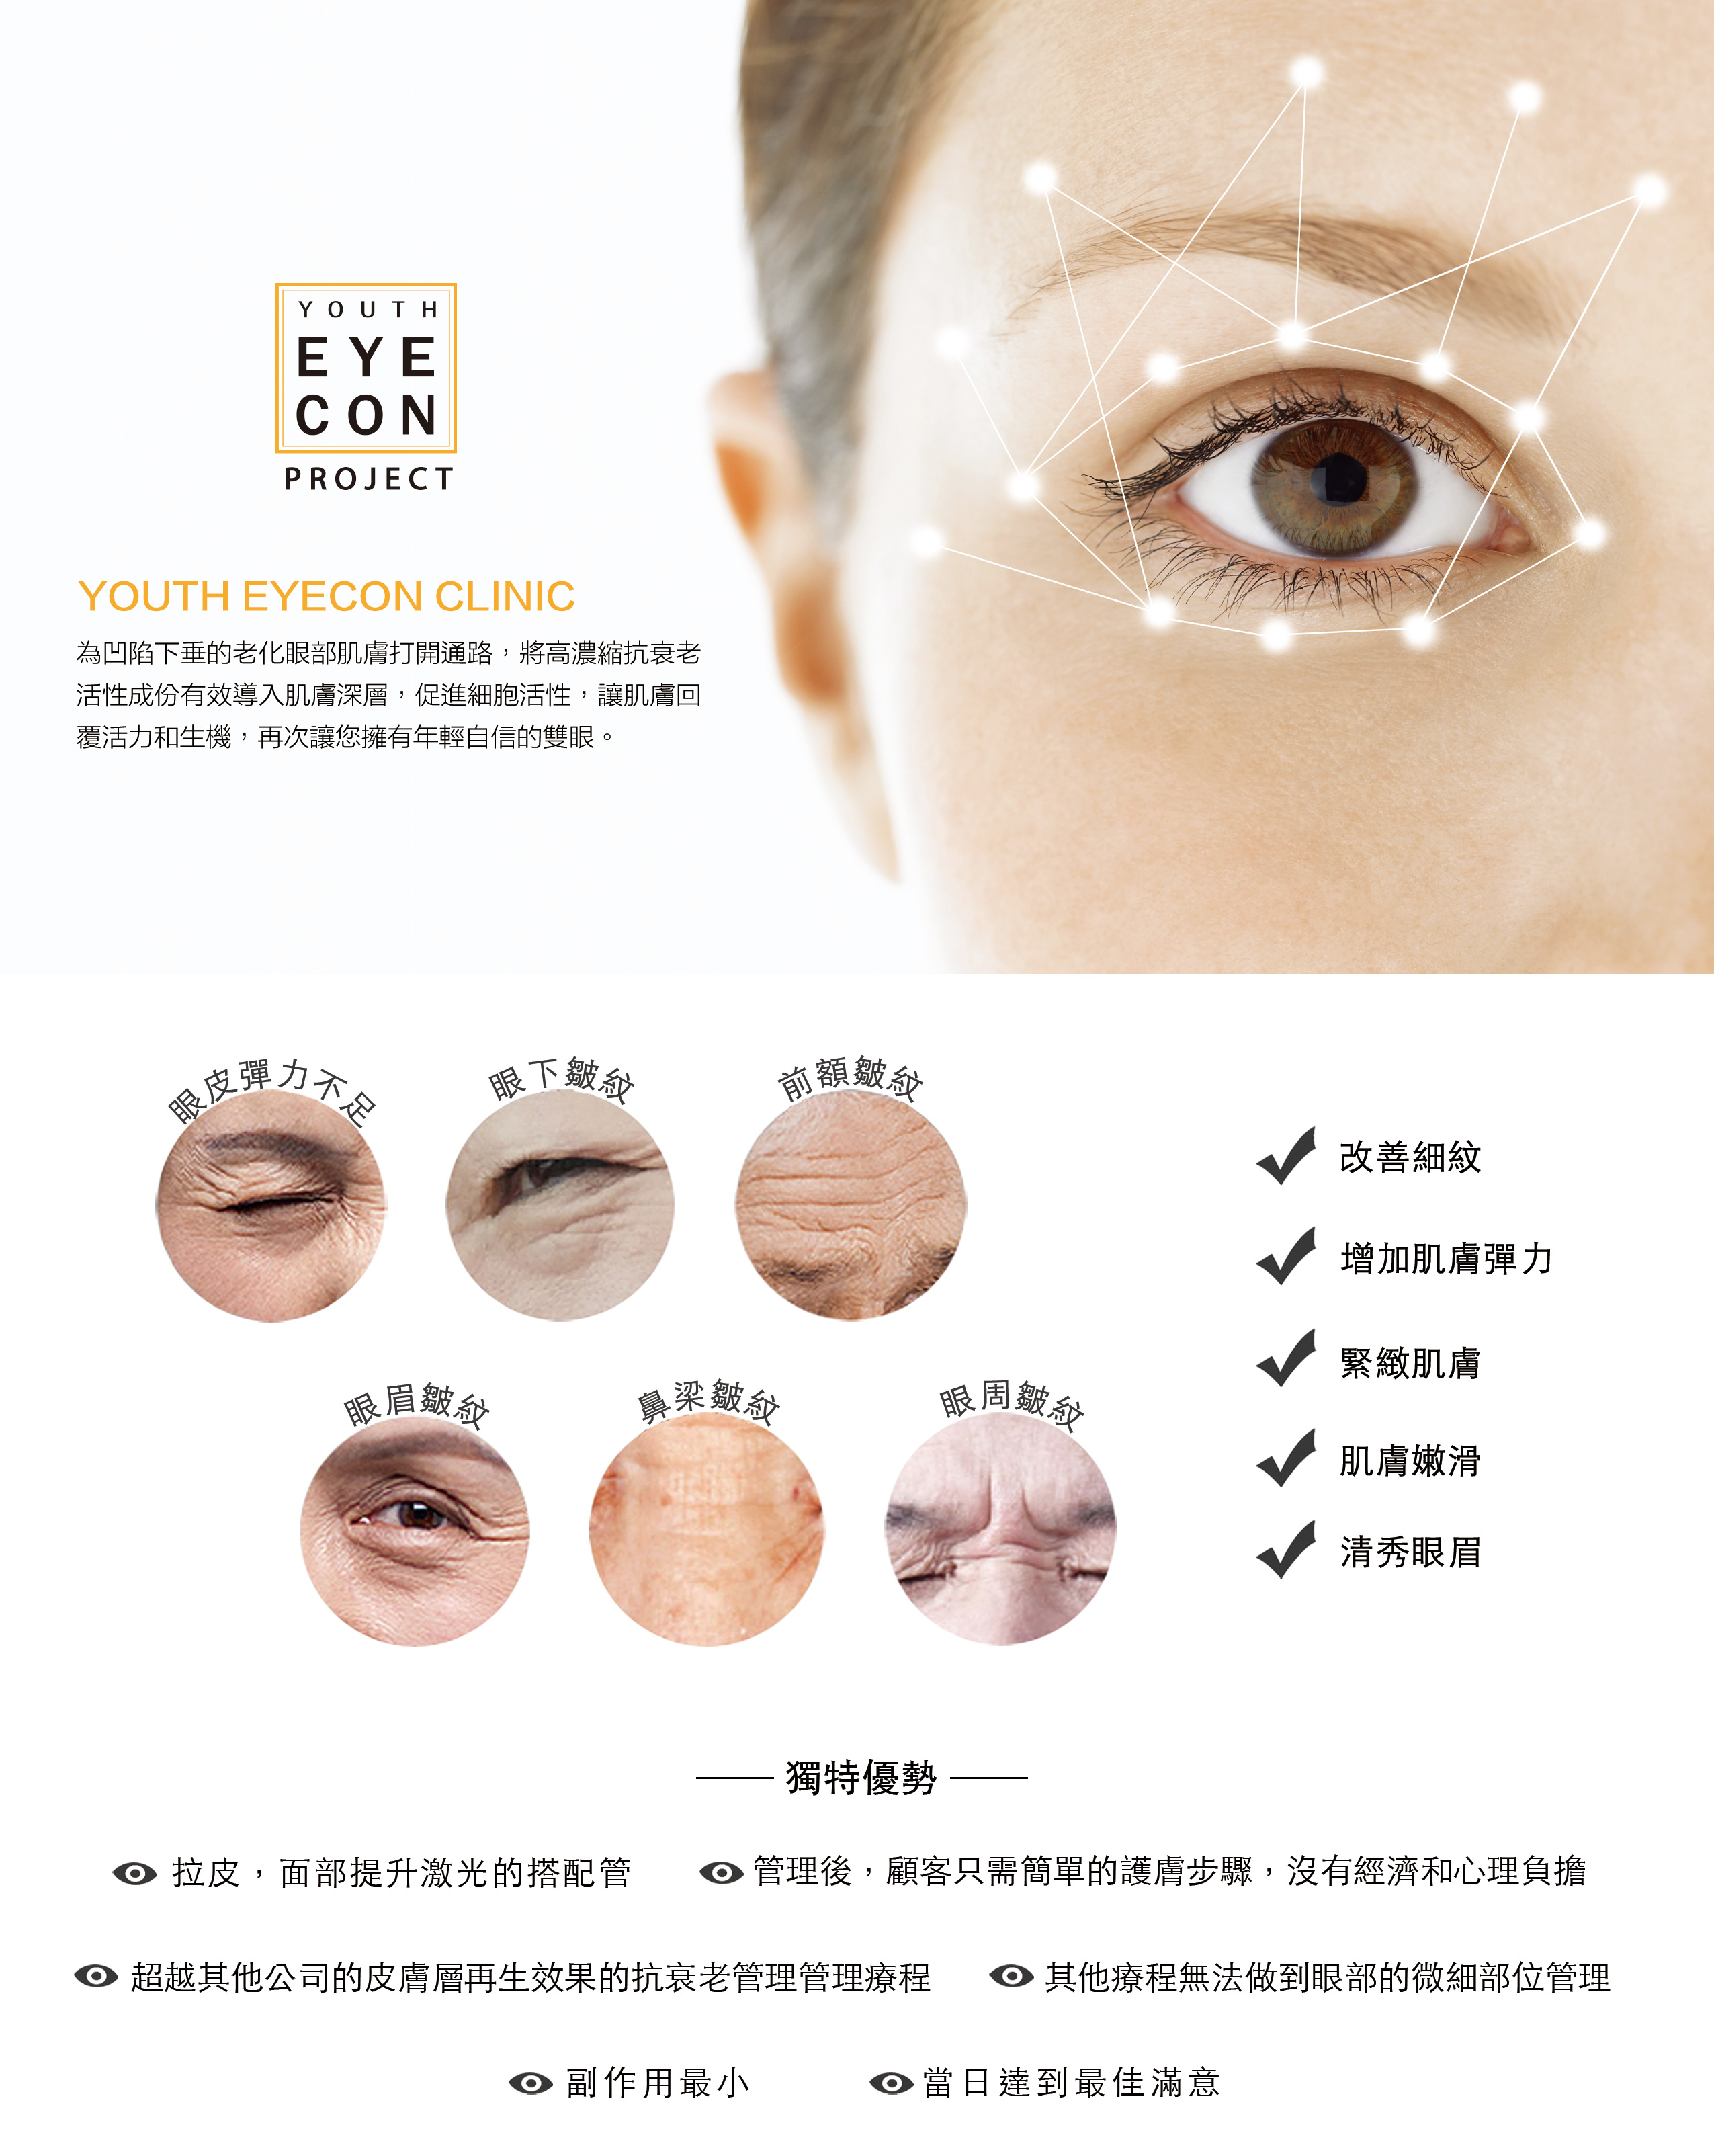 為凹陷下垂的老化眼部肌膚打開通路，將高濃縮抗衰老活性成份有效導入肌膚深層，促進細胞活性，讓肌膚回覆活力和生機，再次讓您擁有年輕自信的雙眼。